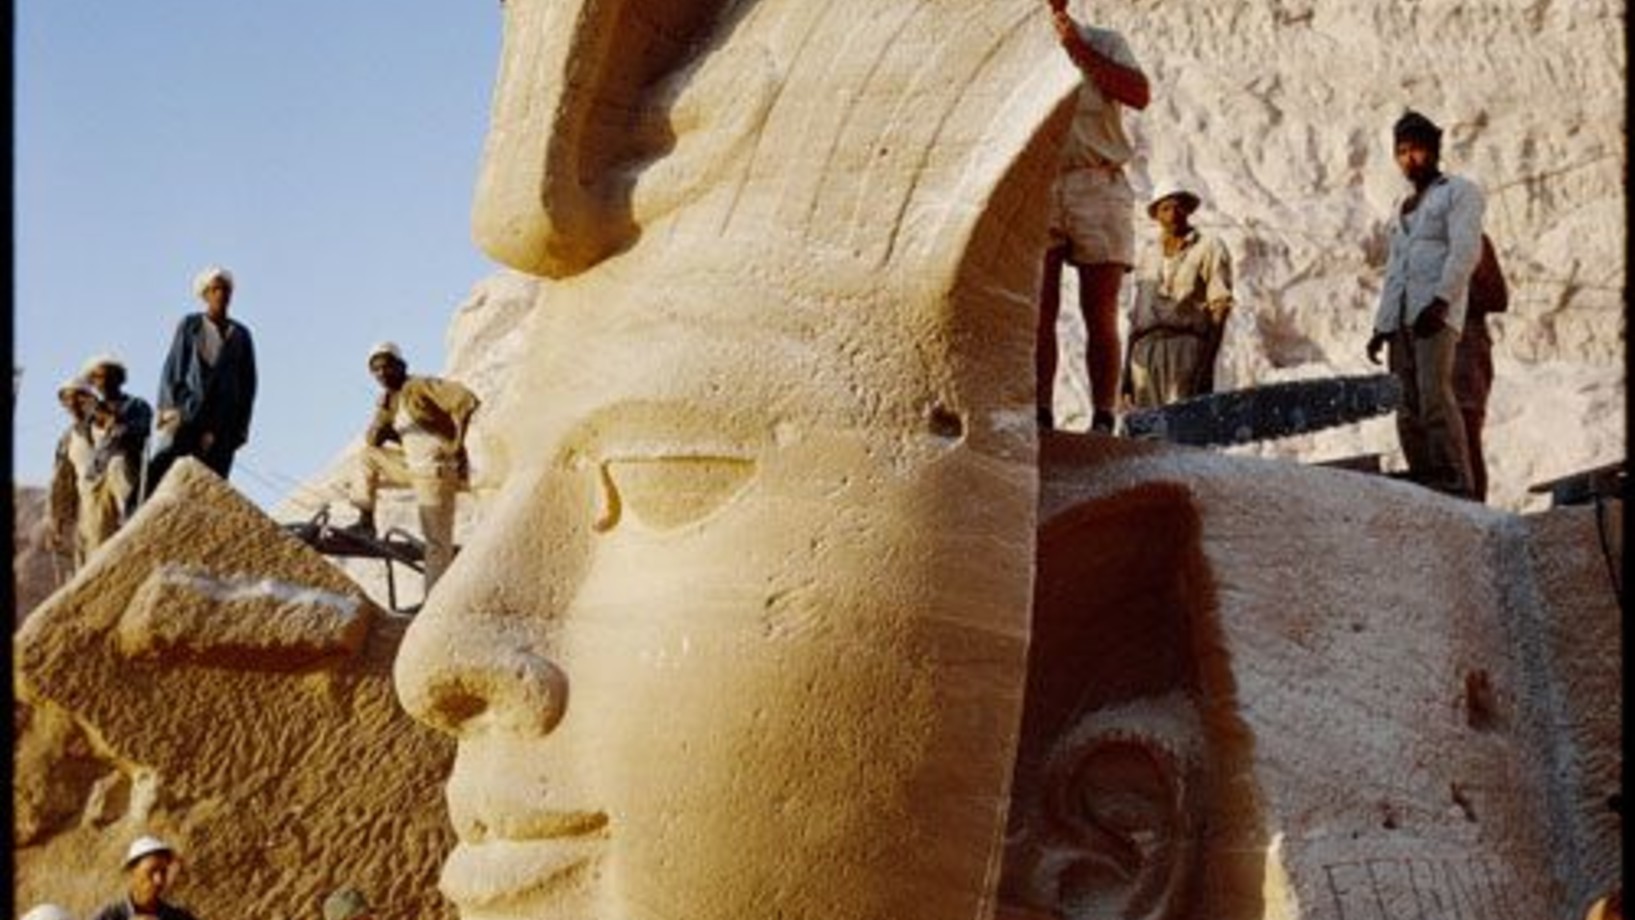 Pharao Ramses - Der Gottkönig verliert sein Gesicht
Am 10. Oktober 1965, 6 Uhr 10, verlor Pharao Ramses sein Gesicht – wohl der spektakulärste Moment in der von l963 bis 1968 dauernden Bergung der Felsentempel von Abu Simbel am nubischen Nil. In einem Wettlauf mit der organisierten Sintflut hinter dem Hochdamm von Assuan wurden die Tempel in praktikable Happen zersägt und landeinwärts hochwassersicher wieder zusammengeklebt - ein technisches Bravourstück sondergleichen. Die UNESCO erklärte das Bergungspro…